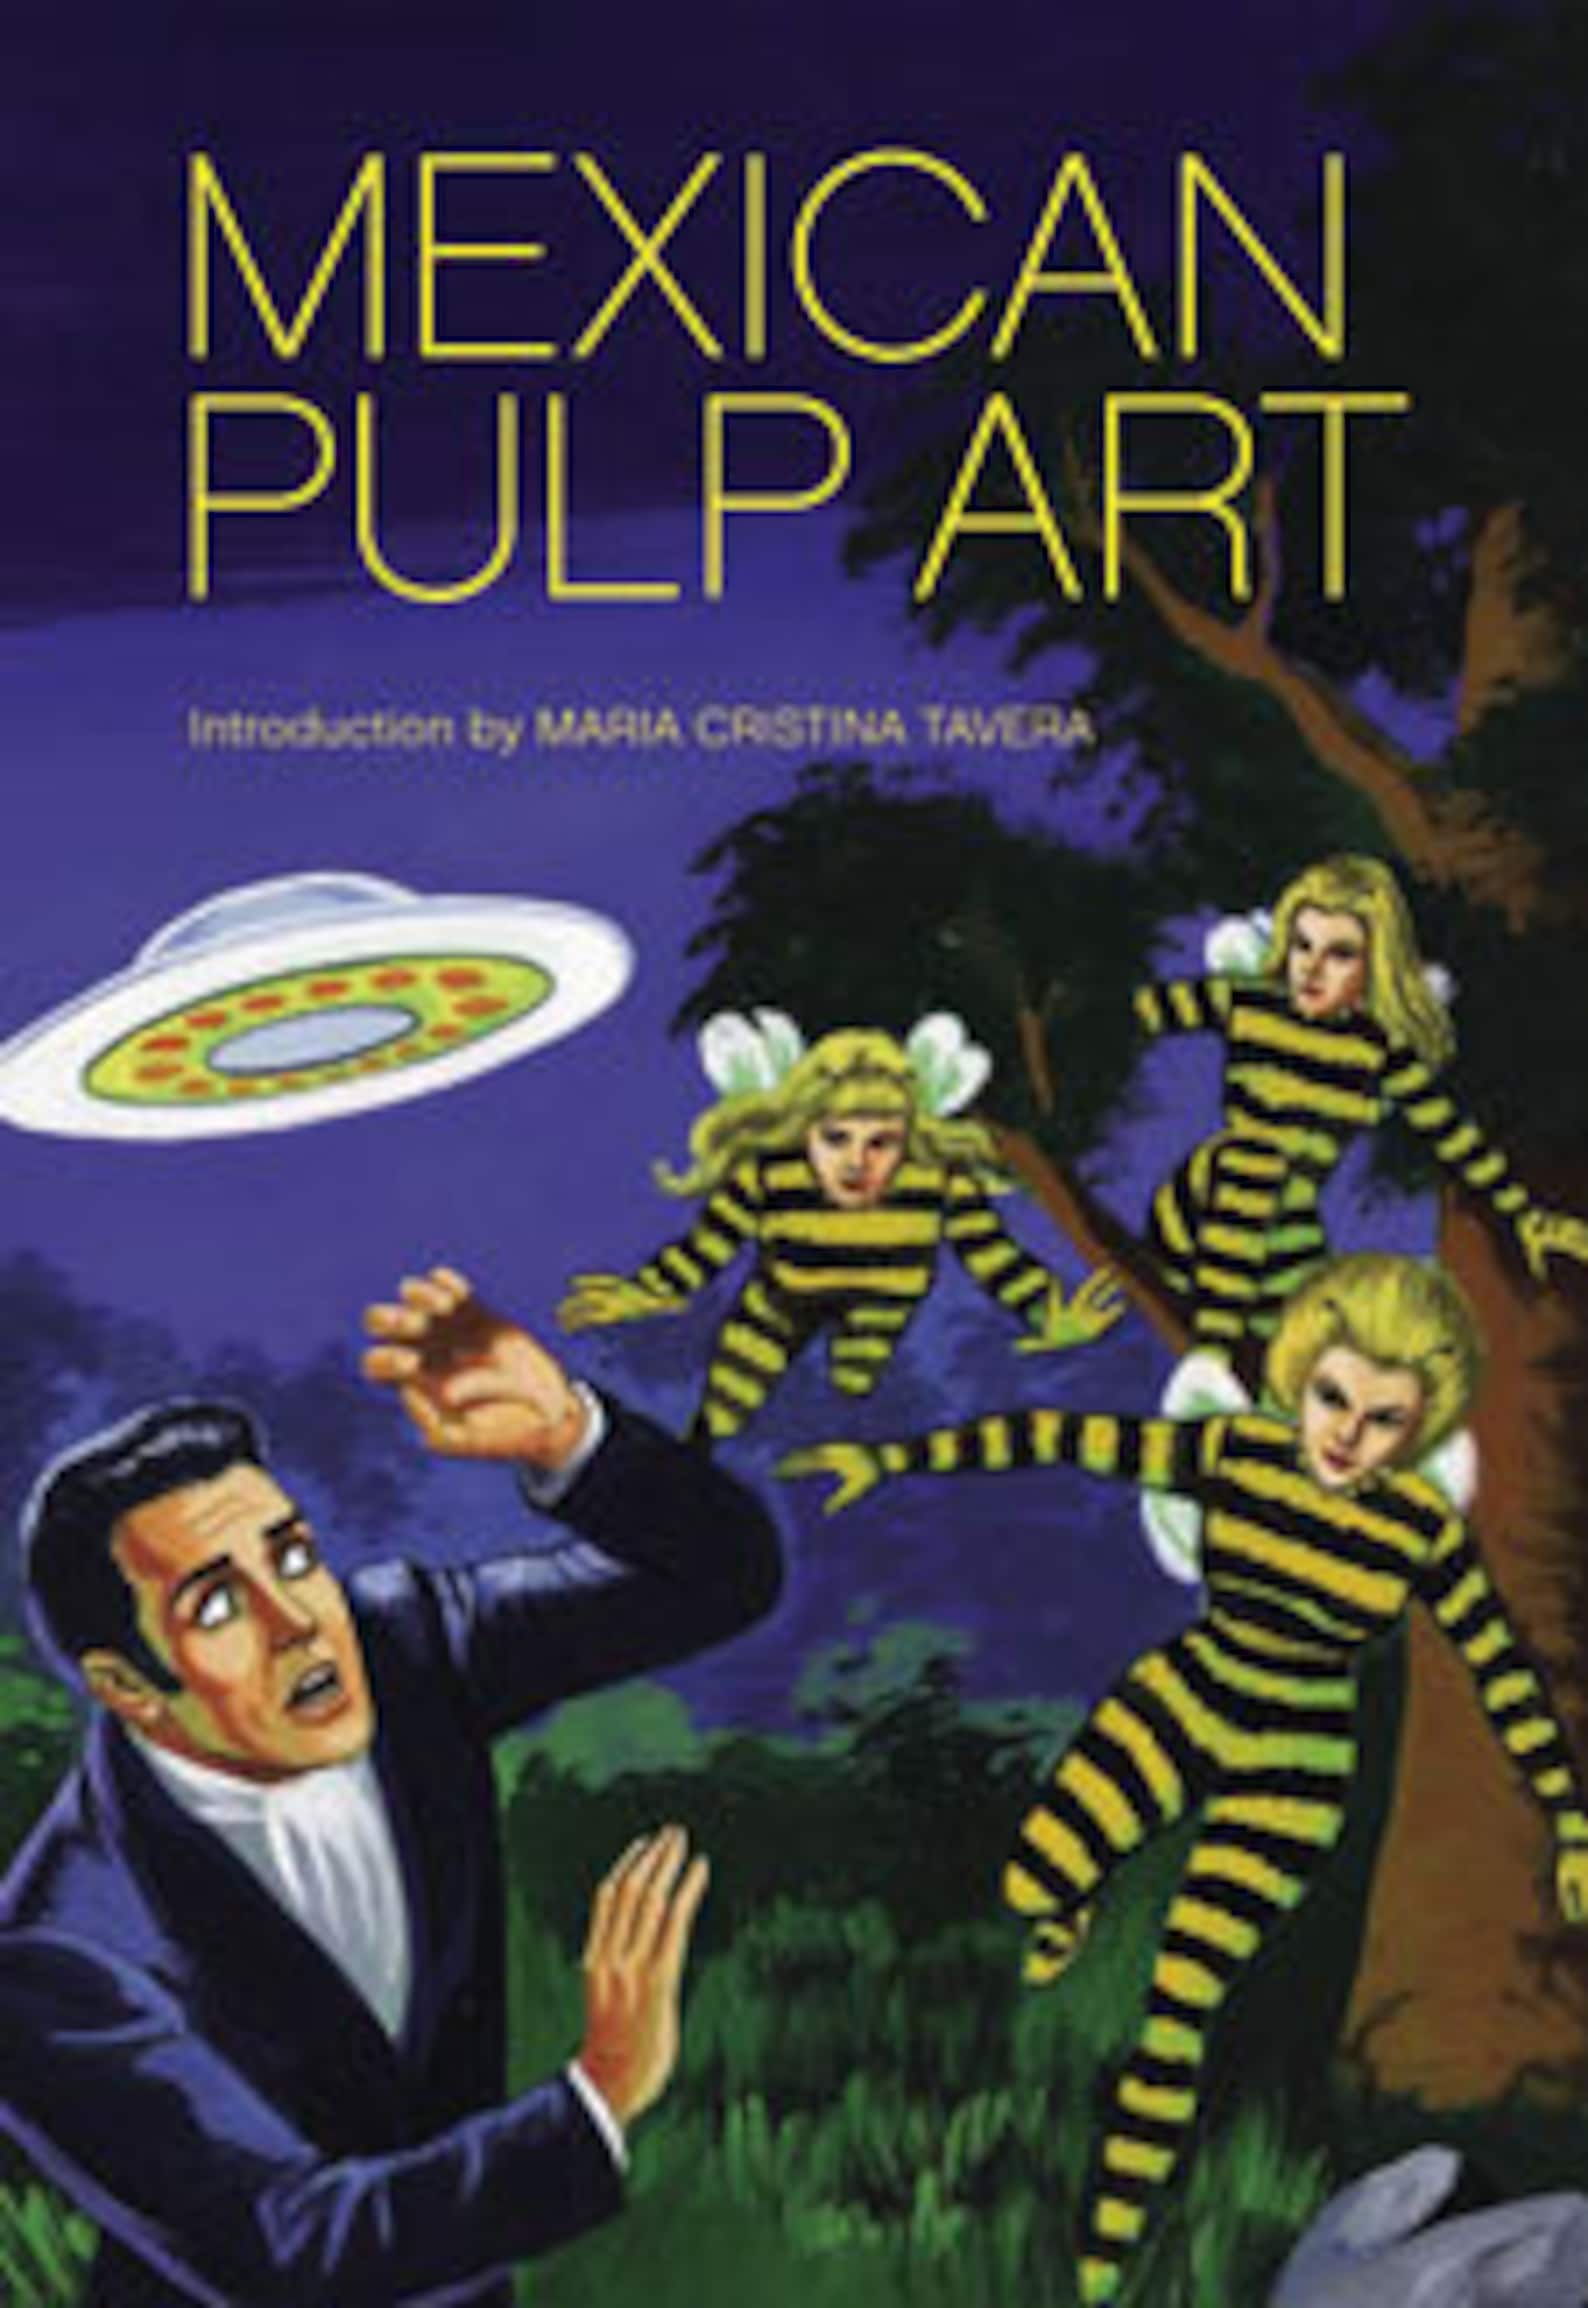 Arte De Pulp Mexicano Lurid Pulp Novel Cover Art 60s 70s Etsy